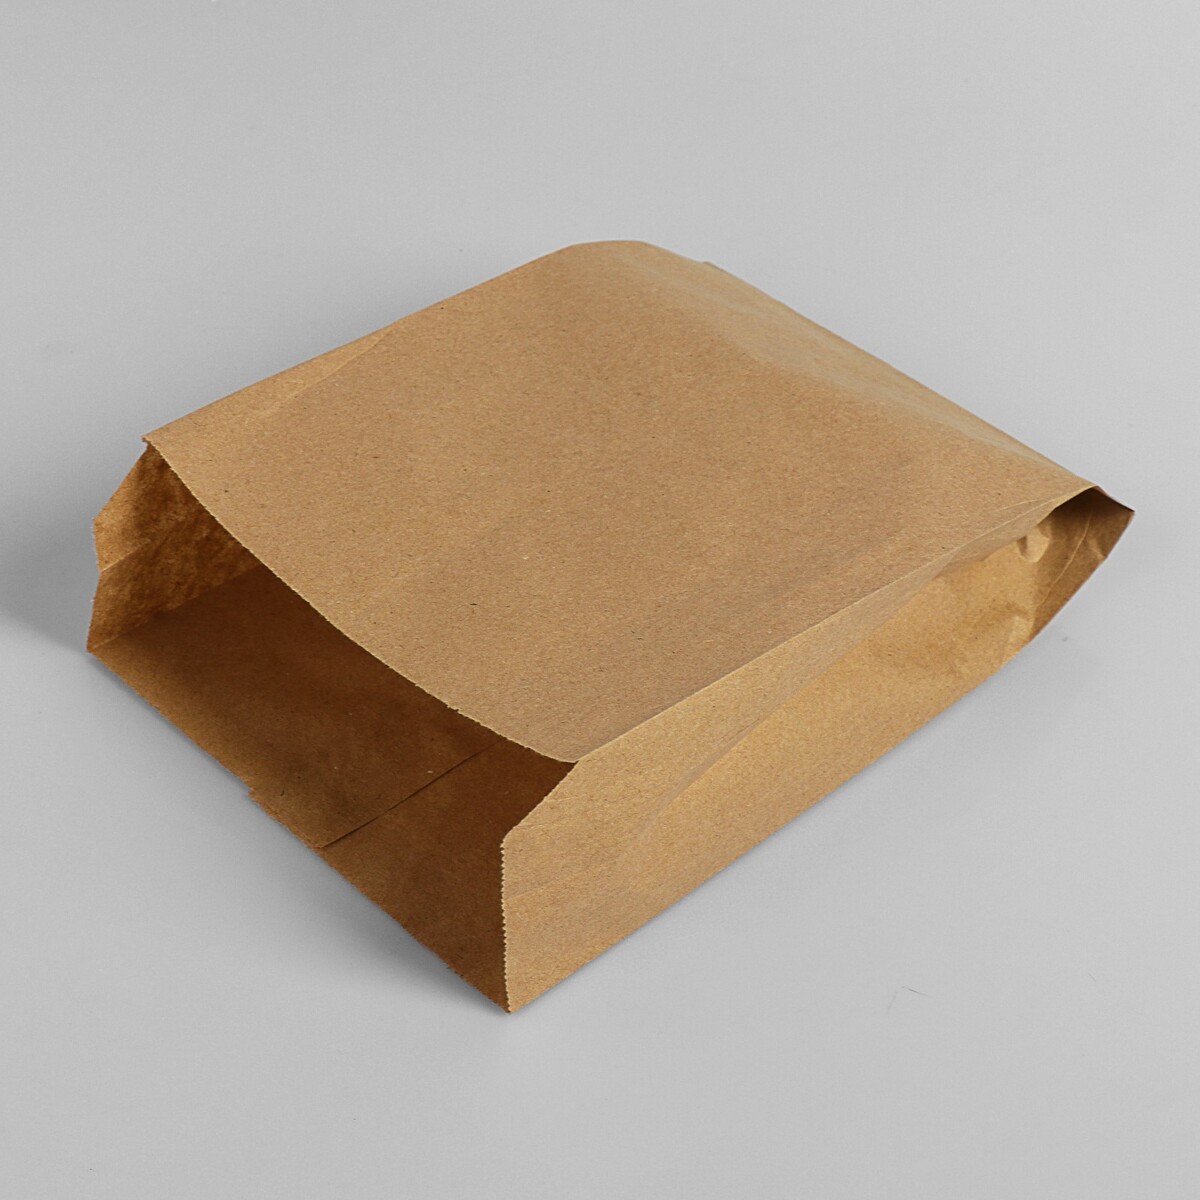 Пакет бумажный фасовочный, крафт, v-образное дно 25 х 17 х 7 см, набор 100 шт набор коробок 3 в 1 обратный конус крафт без крышек 19 5 20 24 10 5 15 14